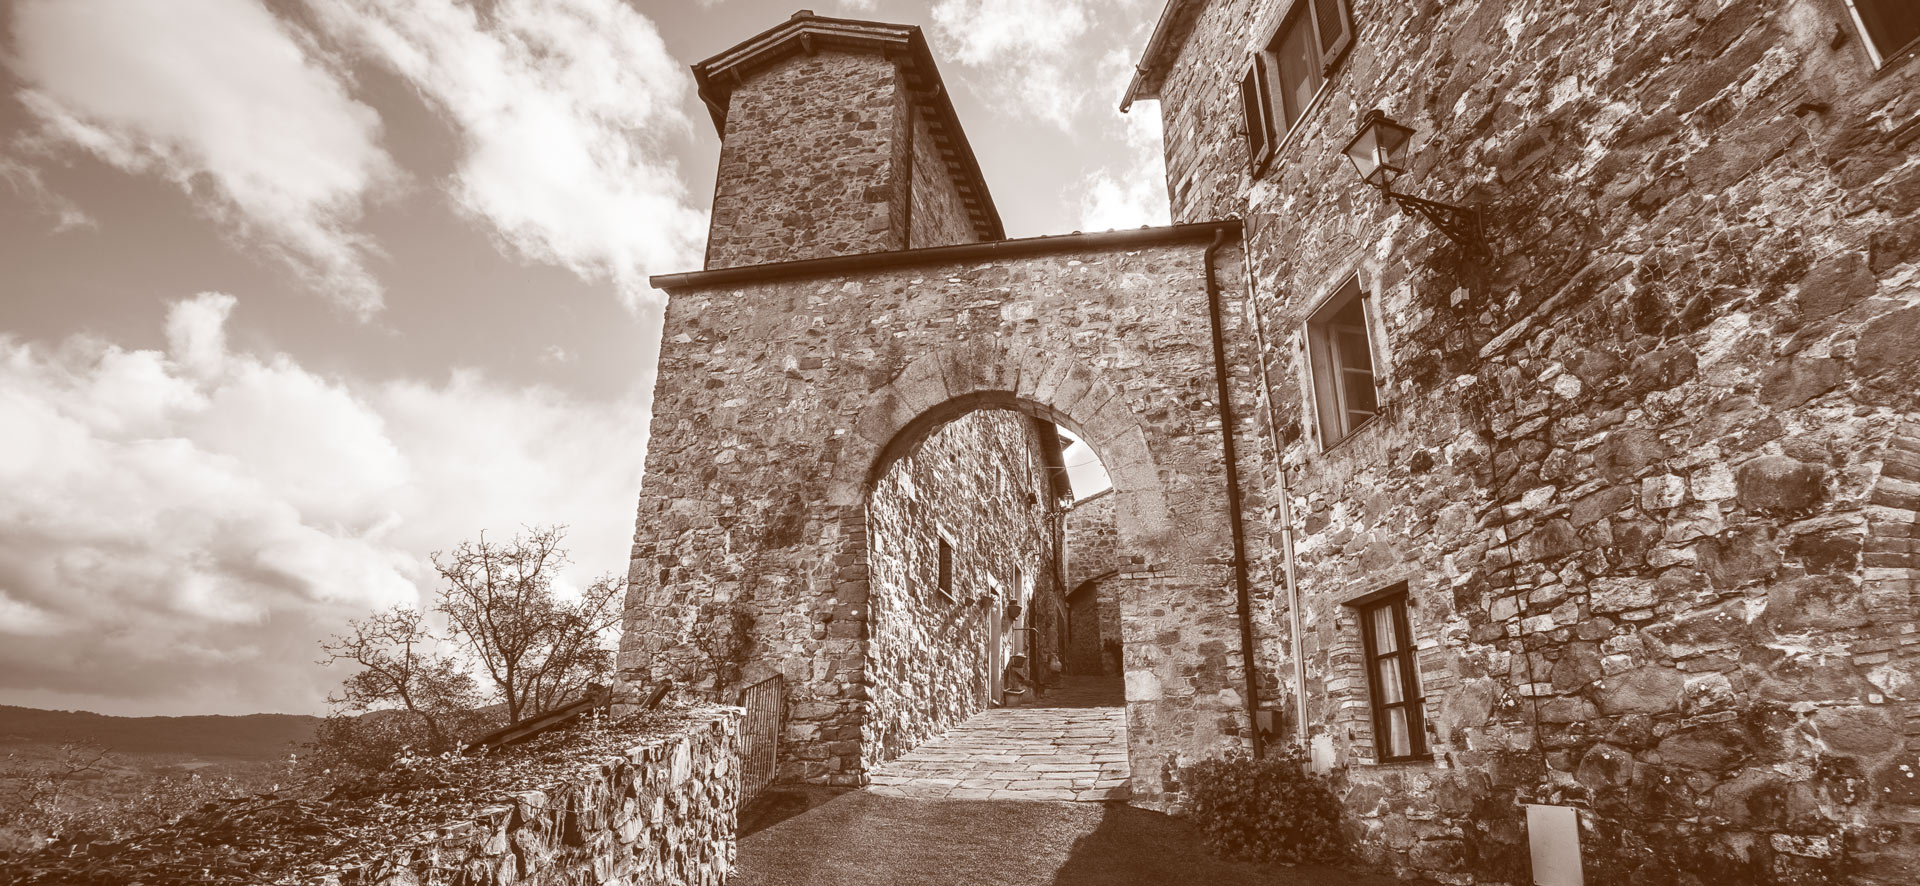 vivicastelnuovo- immagine porta fiorentina